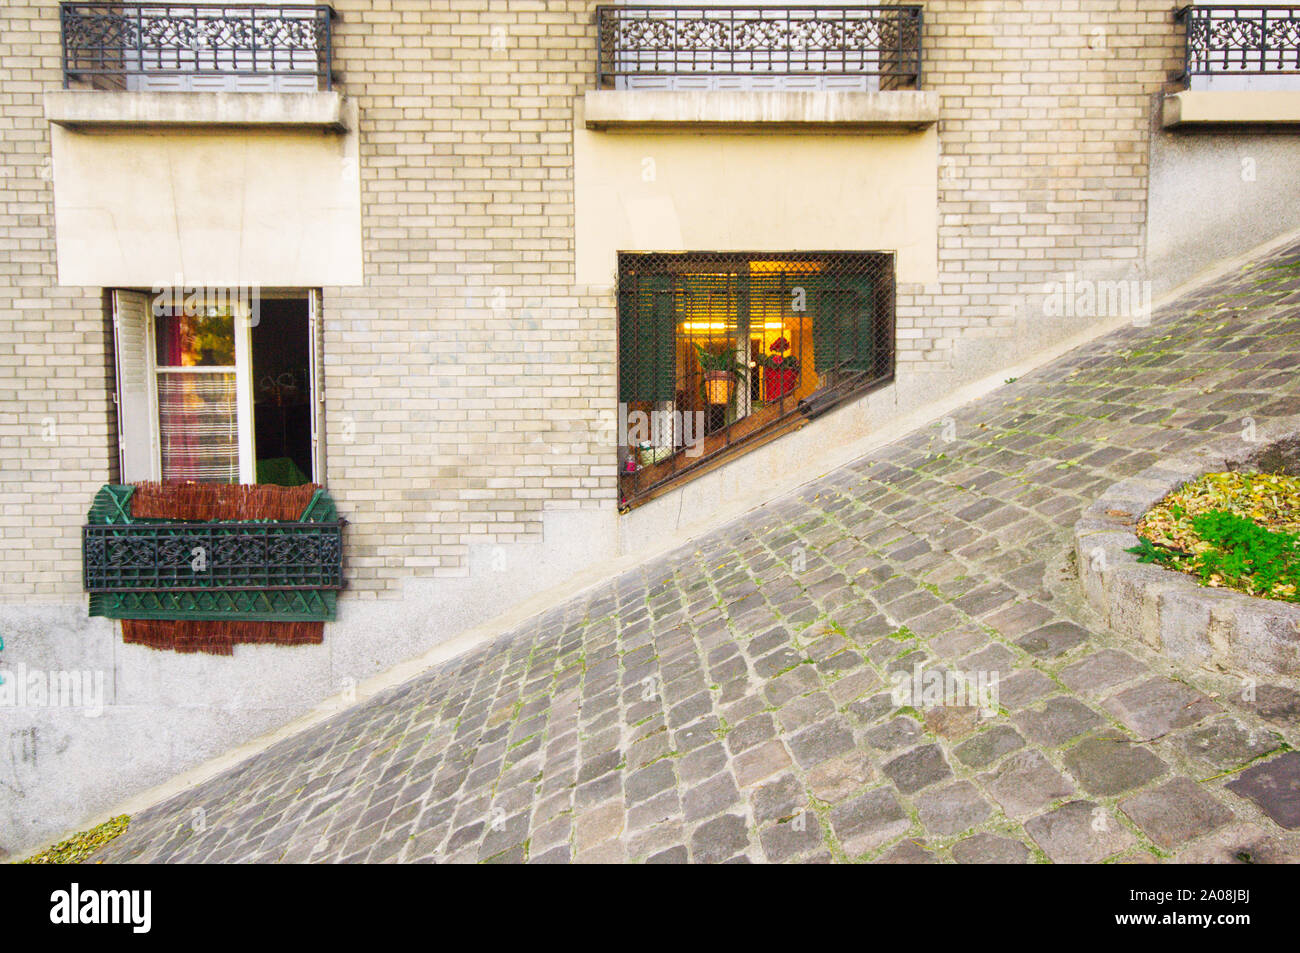 Rues de Paris, petite allée dans le quartier de Montmartre, Paris,l'Europe Banque D'Images